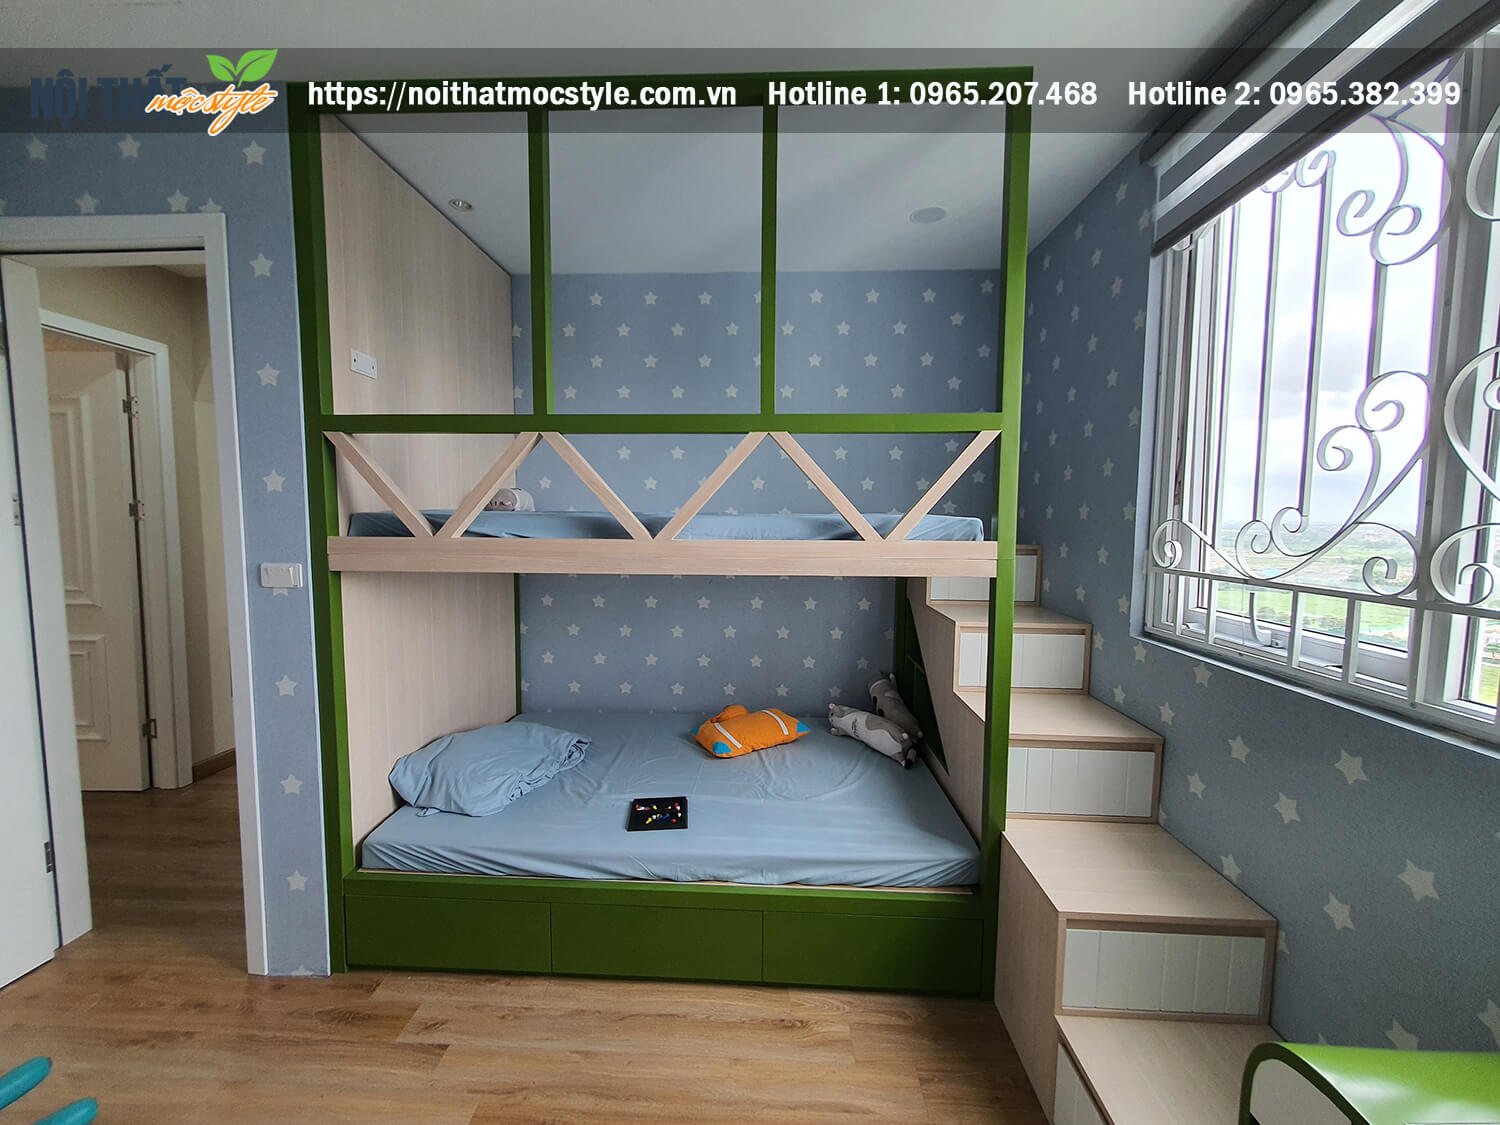 Không gian phòng ngủ bé cực đẹp và an toàn, khơi gợi sự hứng thú và khả năng sáng tạo cùng giường ngủ 2 tầng cho bé